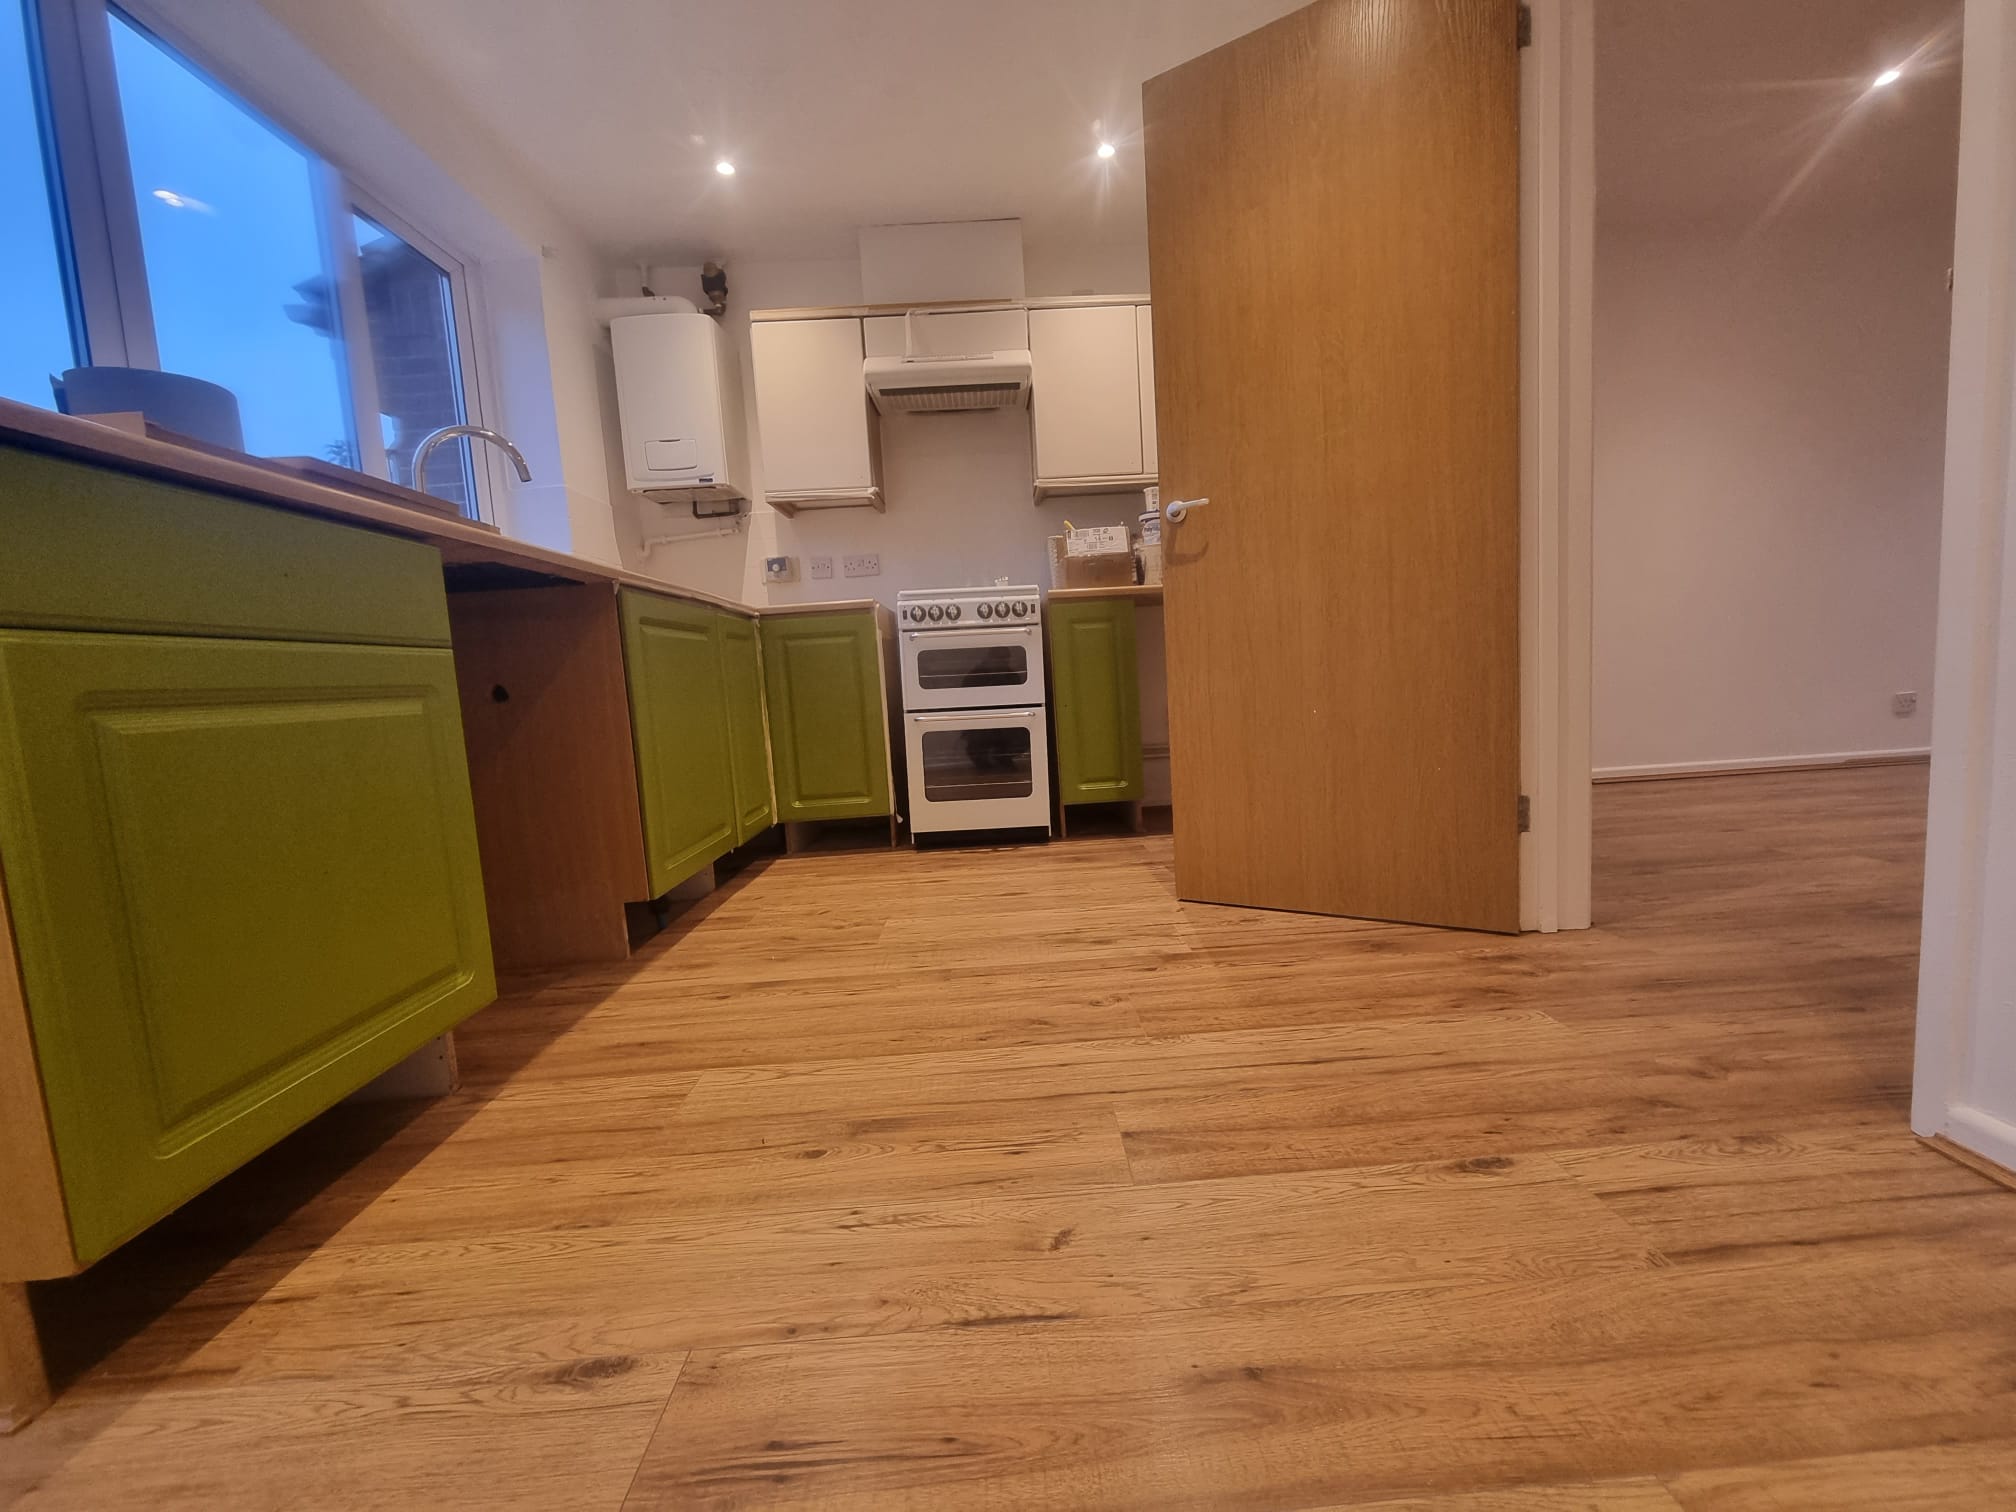 Laminate Flooring in a kitchen